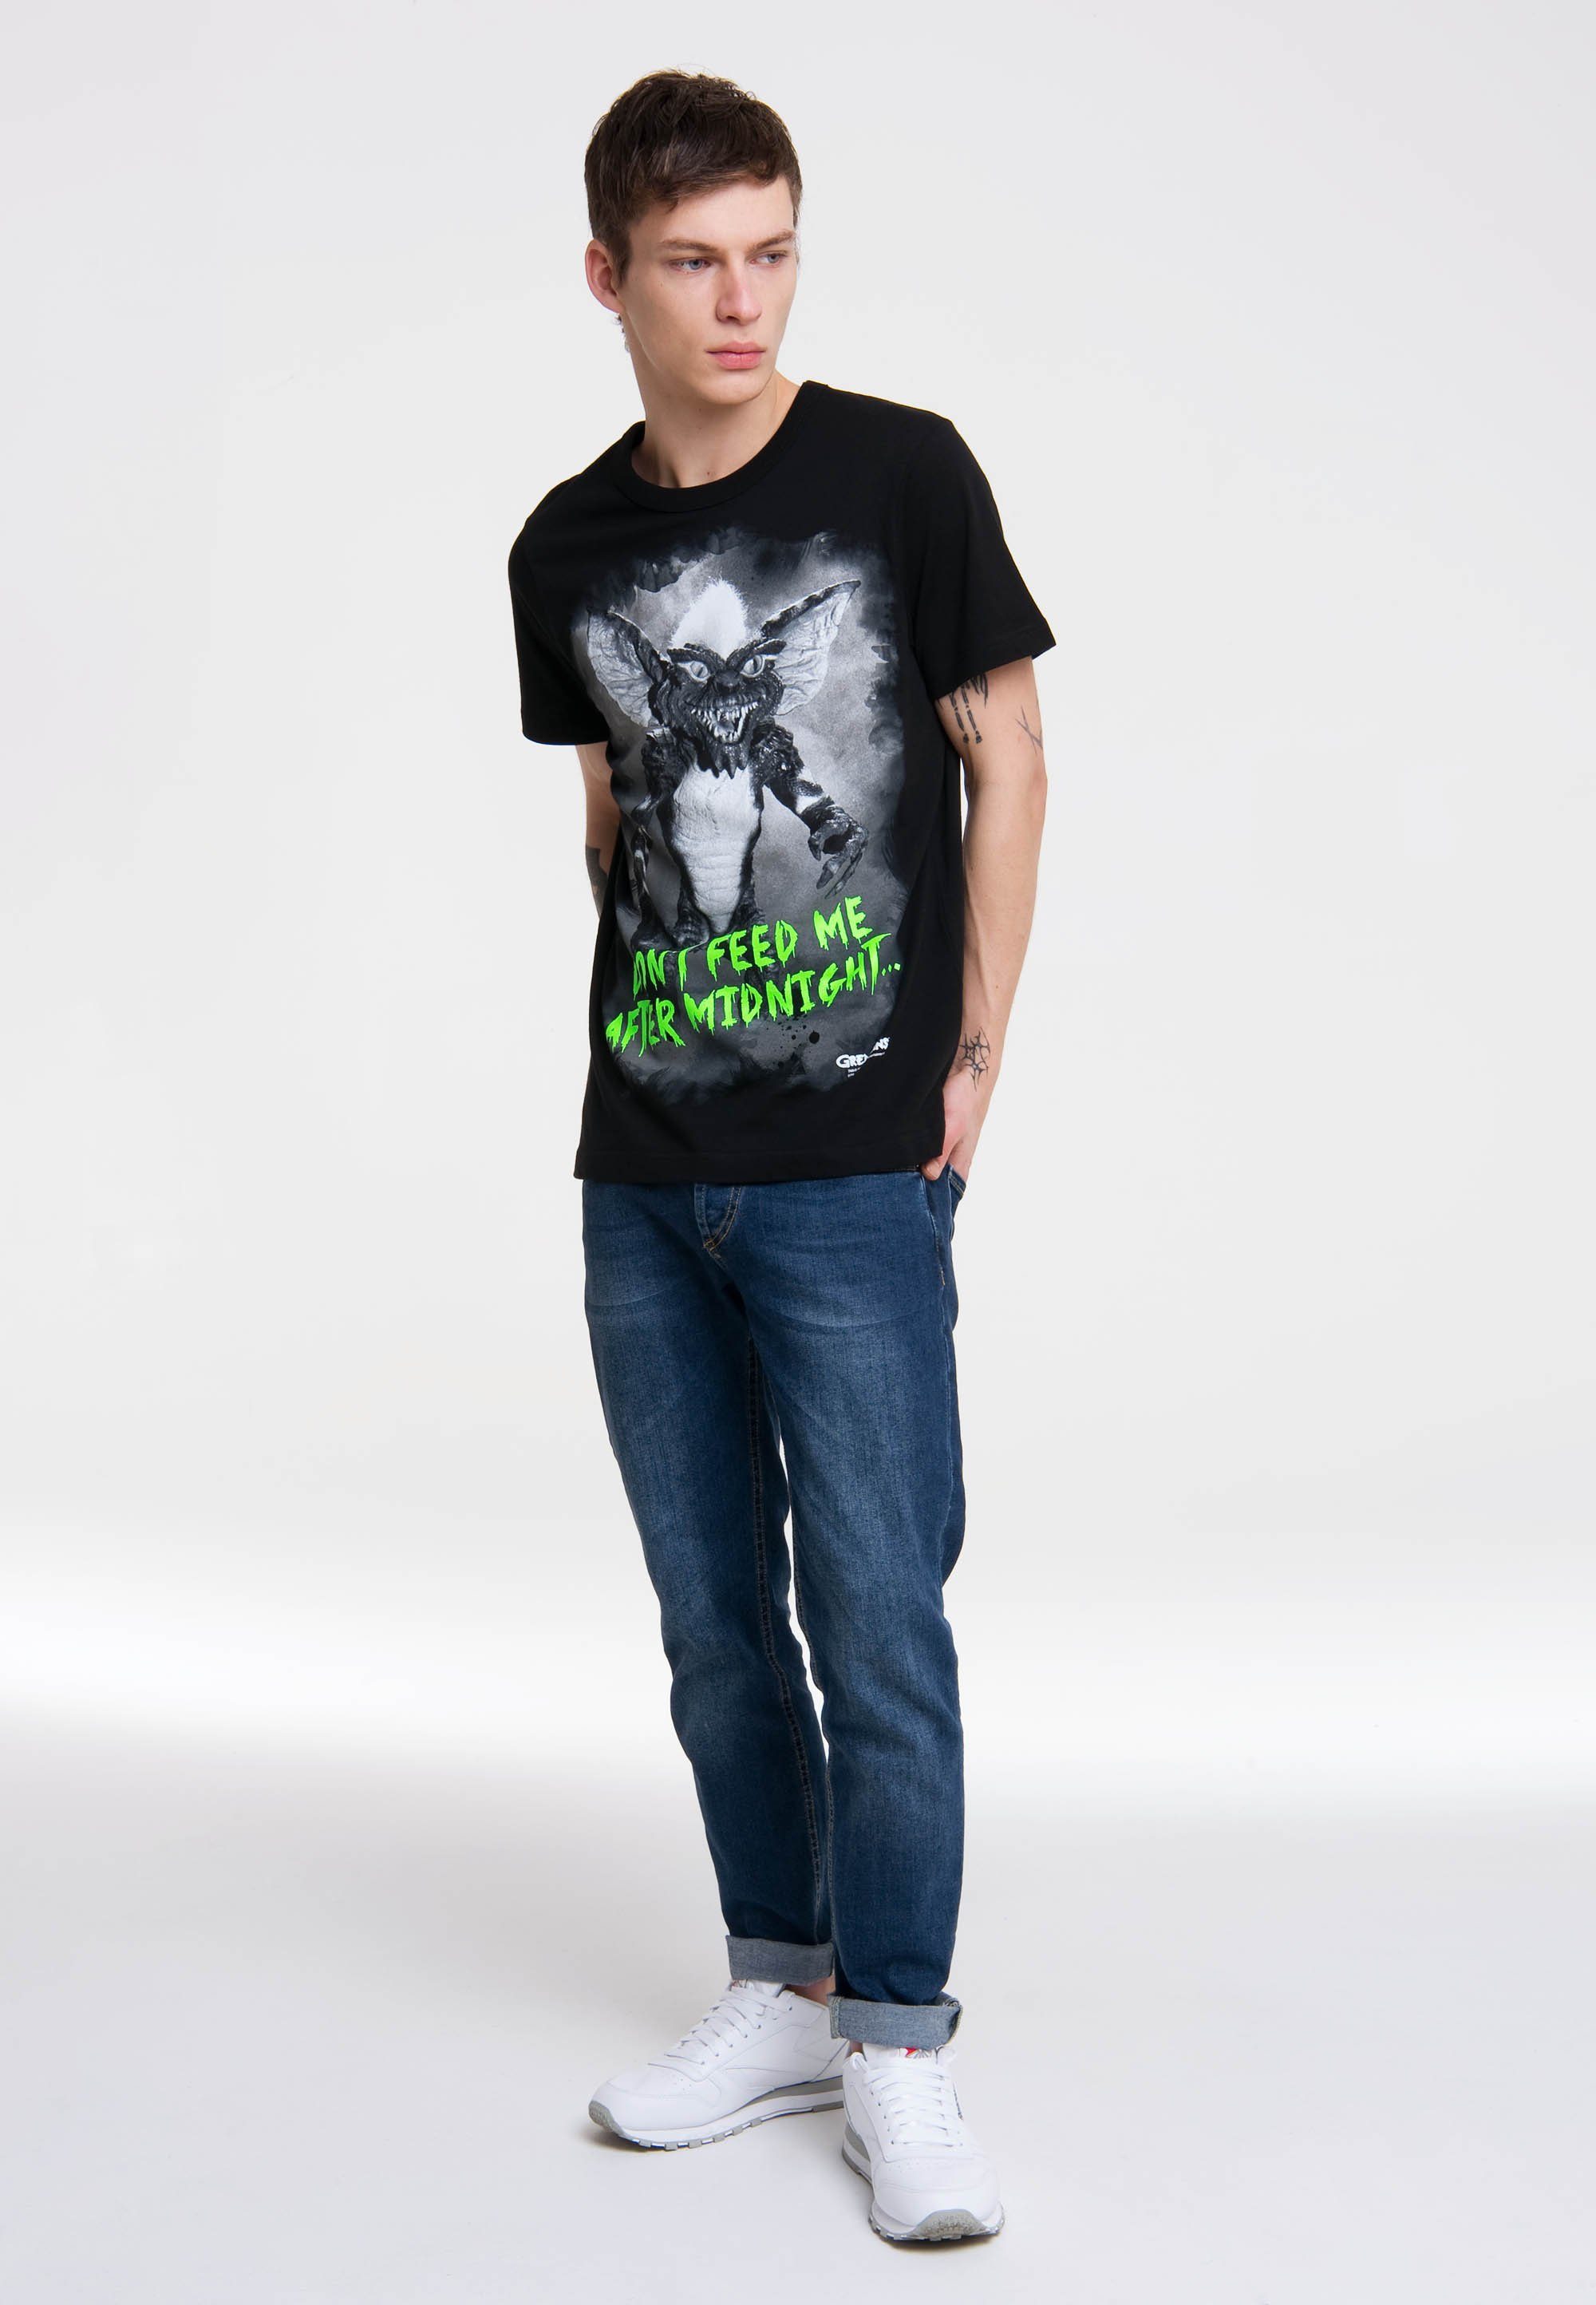 LOGOSHIRT T-Shirt Gremlins After Midnight mit hochwertigem Siebdruck